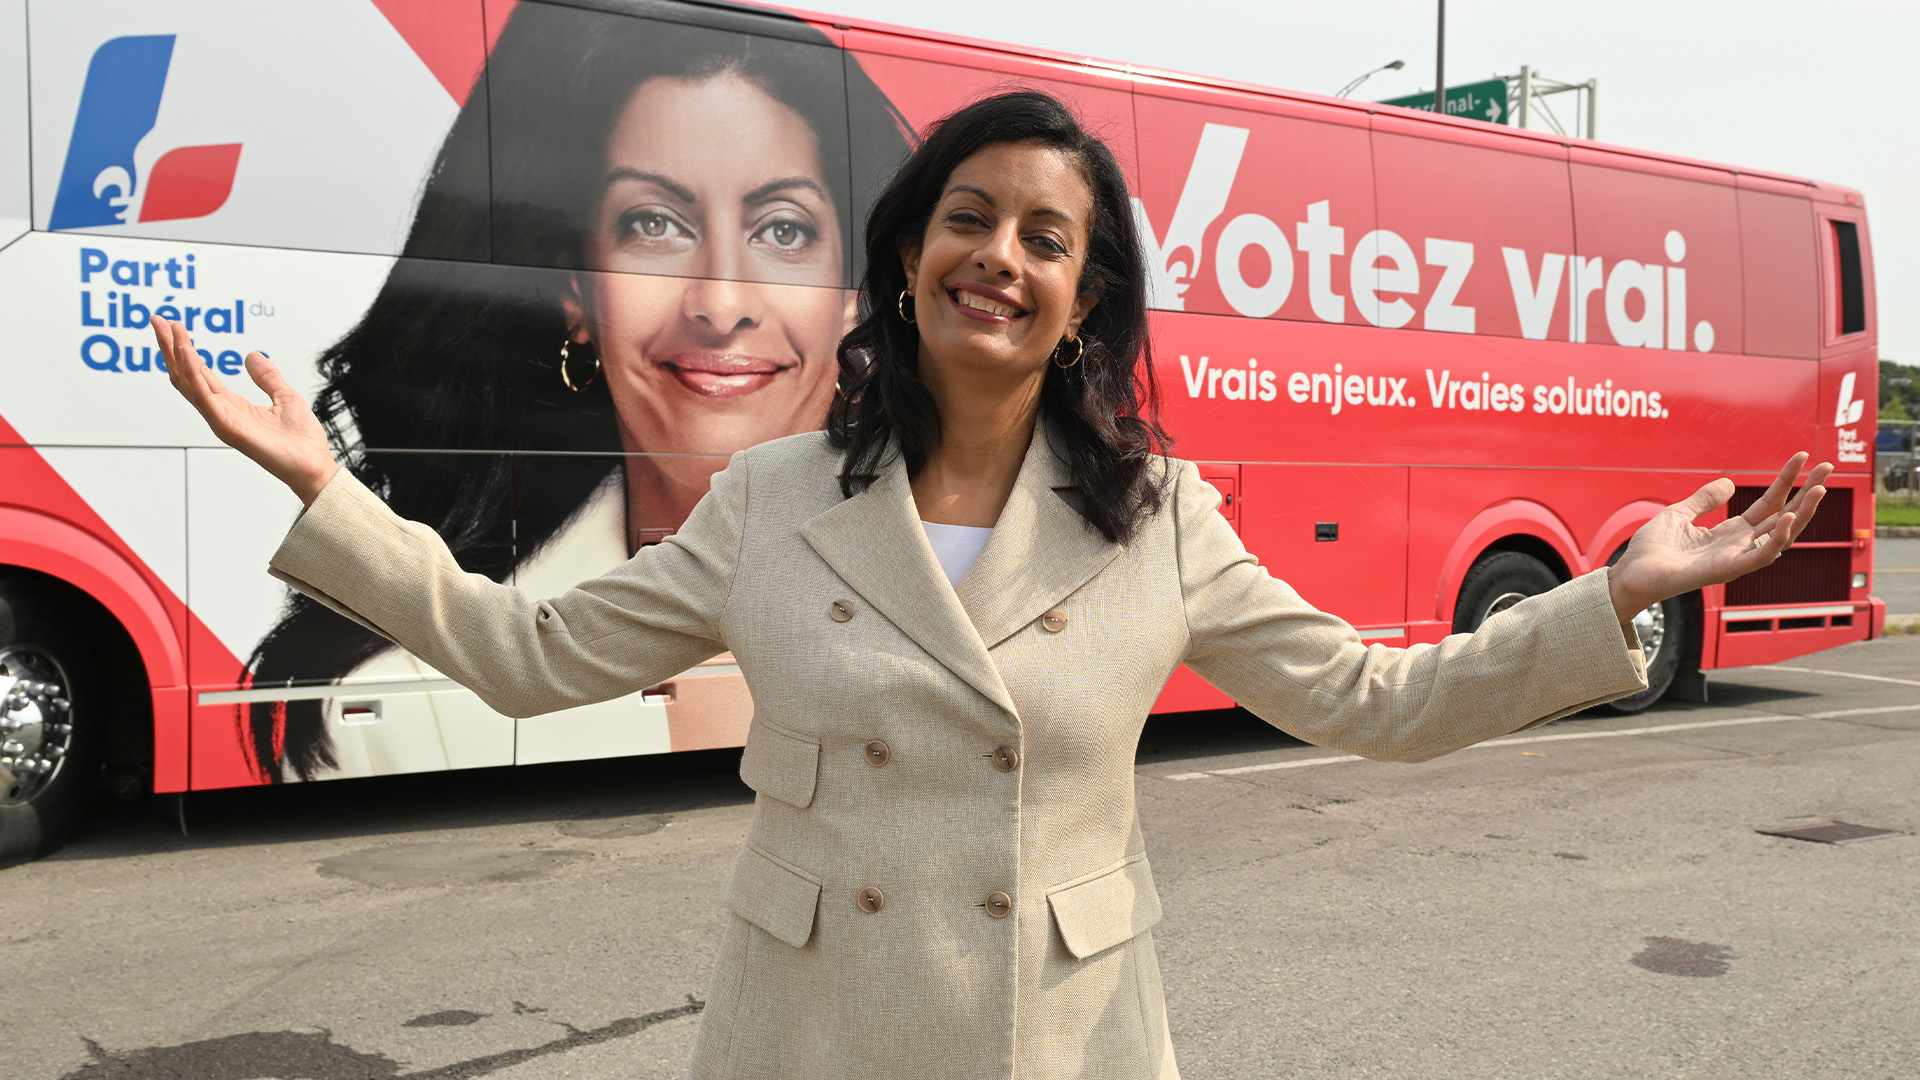 La chef libérale du Québec, Dominique Anglade, pose devant son autobus de campagne lors d'une entrevue, le lundi 29 août 2022 à Québec.